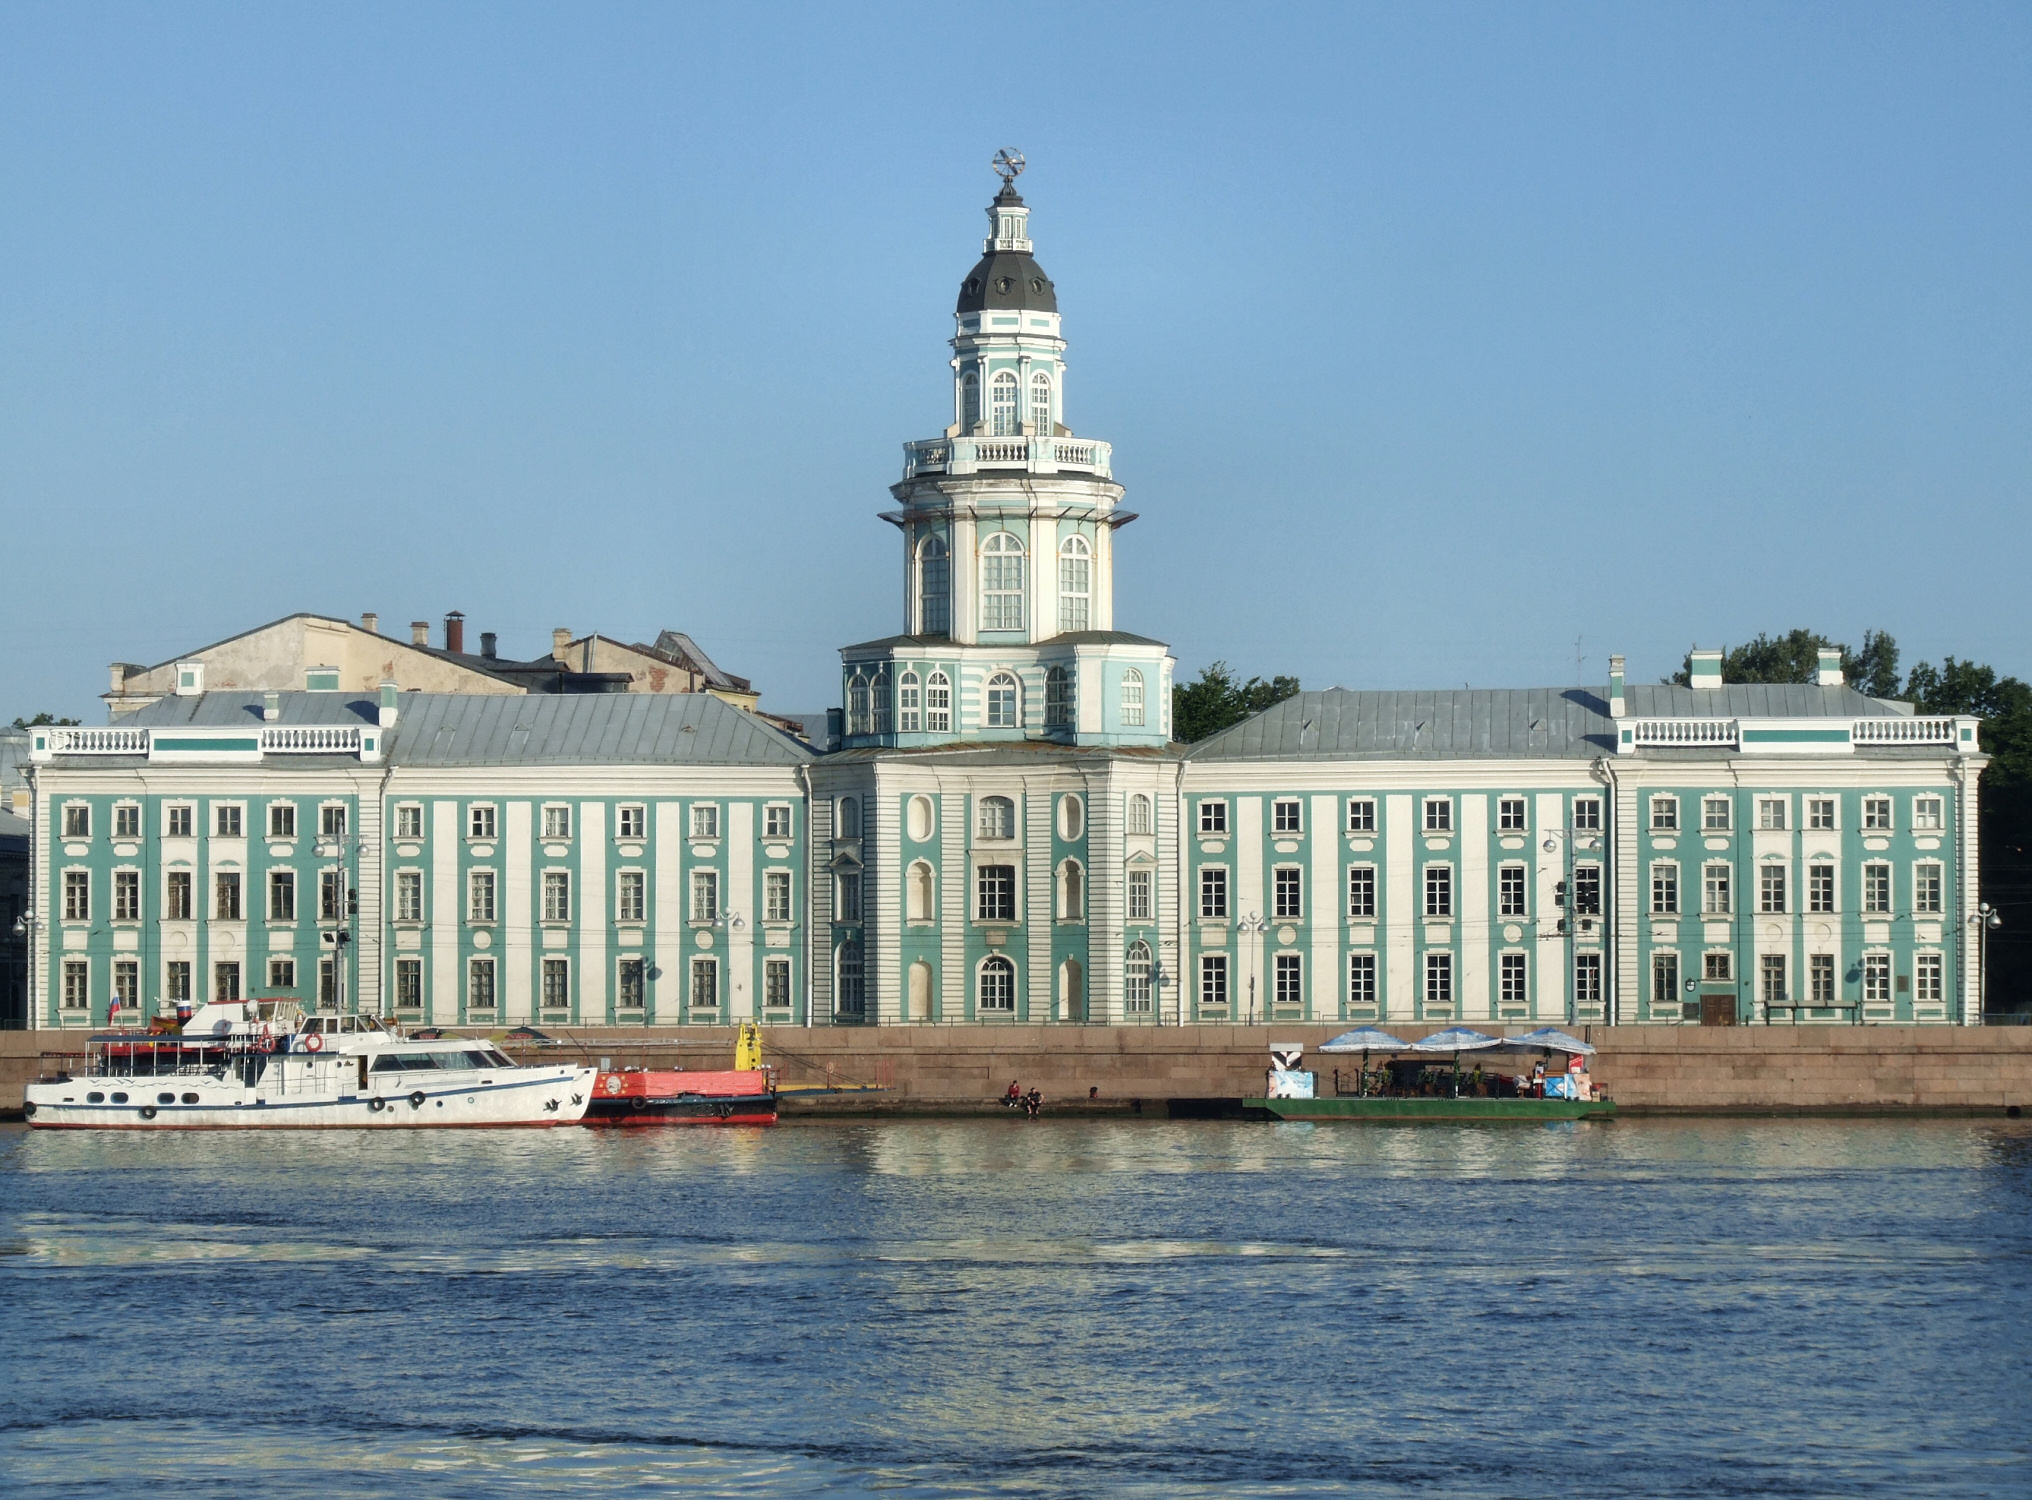 Санкт Петербург е известен още като "Венеция на Севера" заради дворцово подредените си водни пътища. Той успява да избегне нахлуването на сталинисткия архитектурен стил, а грандиозните останки от царските времена си стоят непокътнати. Изваян от островчета и от криволичещата река Нева, градът е перспектива с геометрична елегантност.